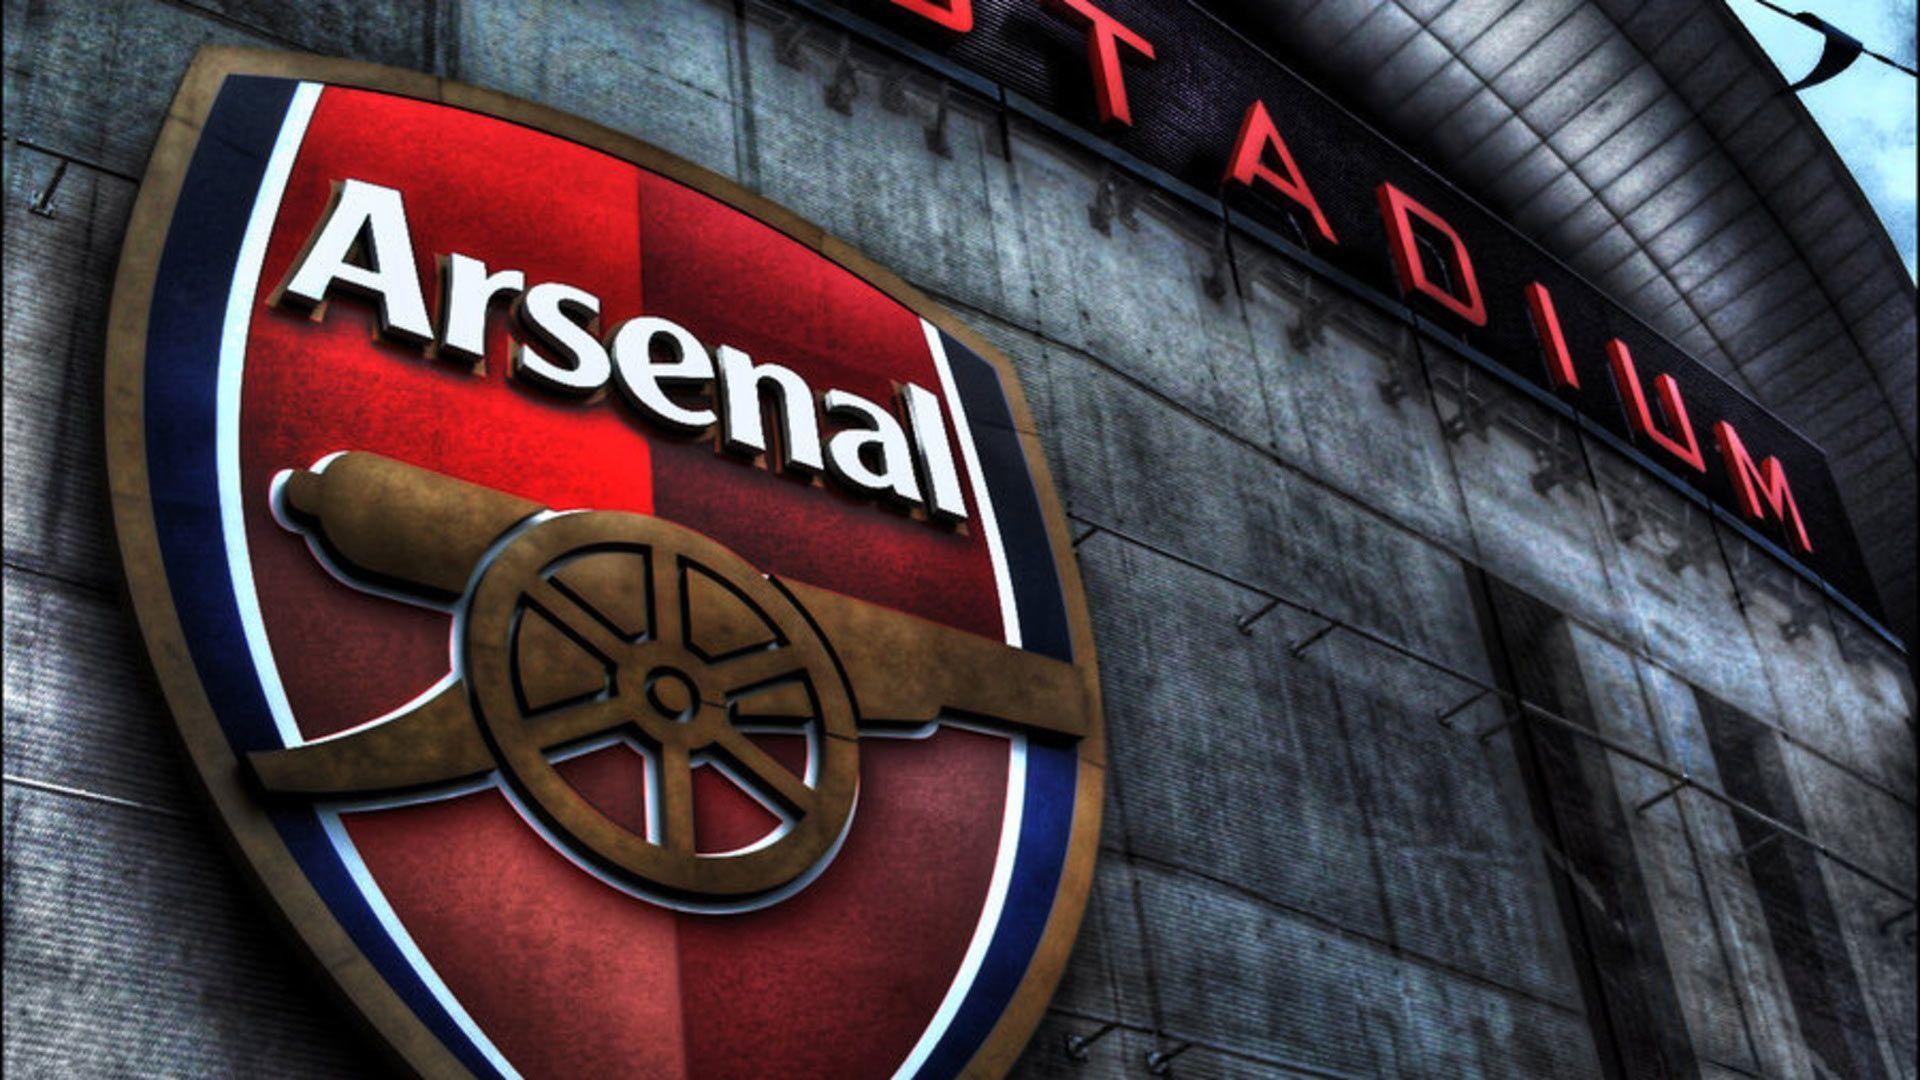 Arsenal F.C. Latest Wallpaper HD Wallpaper